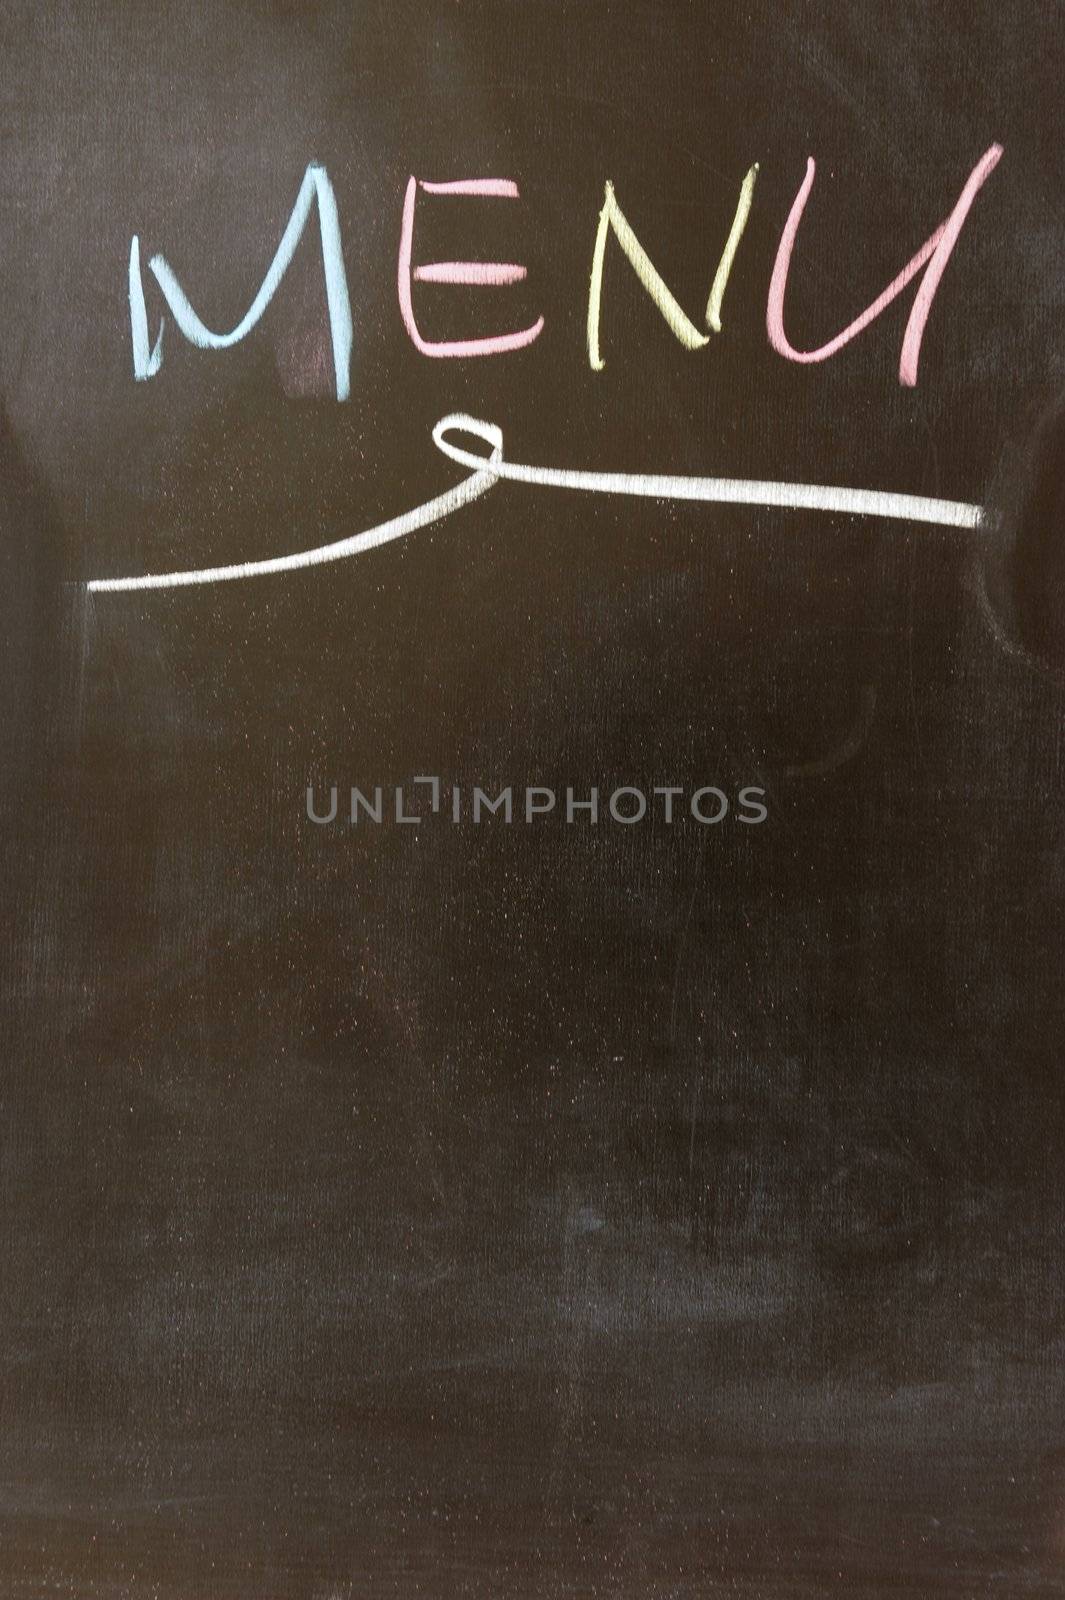 Menu written on chalkboard by raywoo